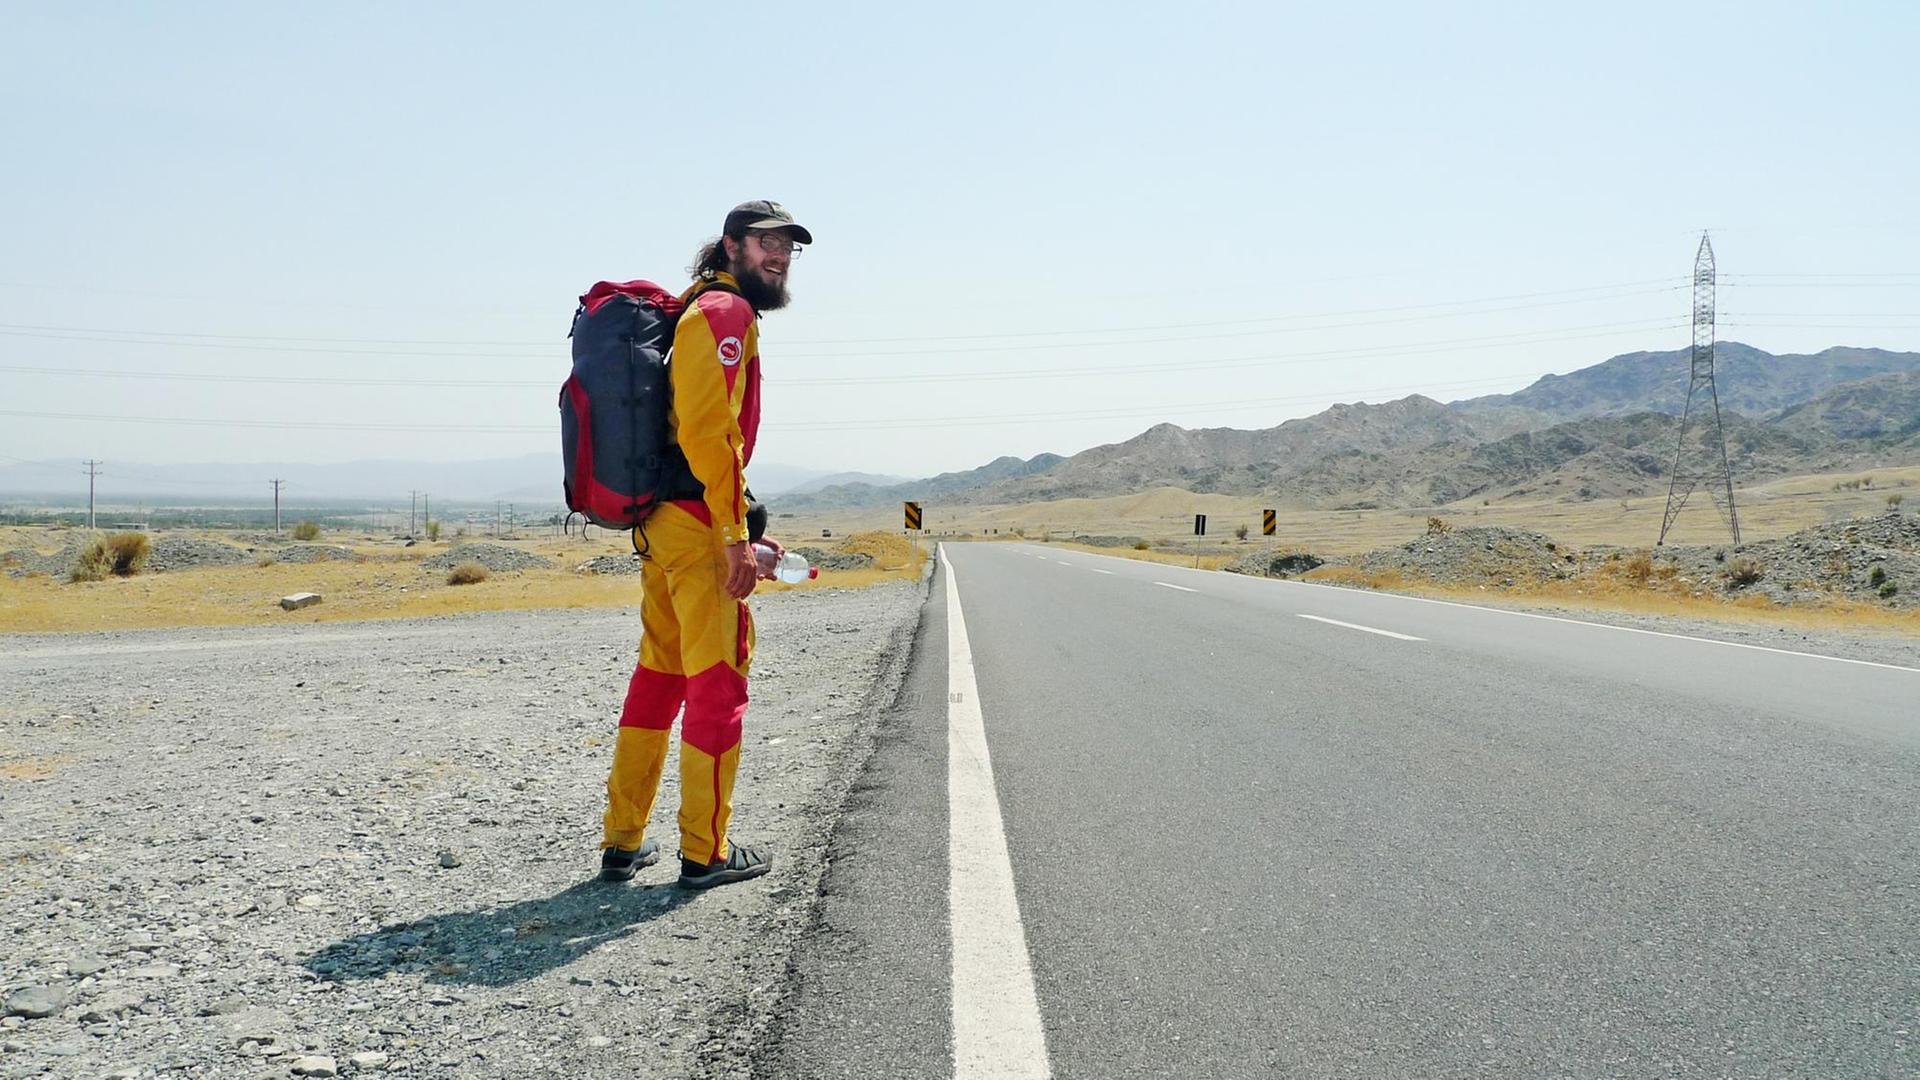 Der Protagonist Stefan läuft, in einem gelb-roten Overall, allein an einer Straße entlang.